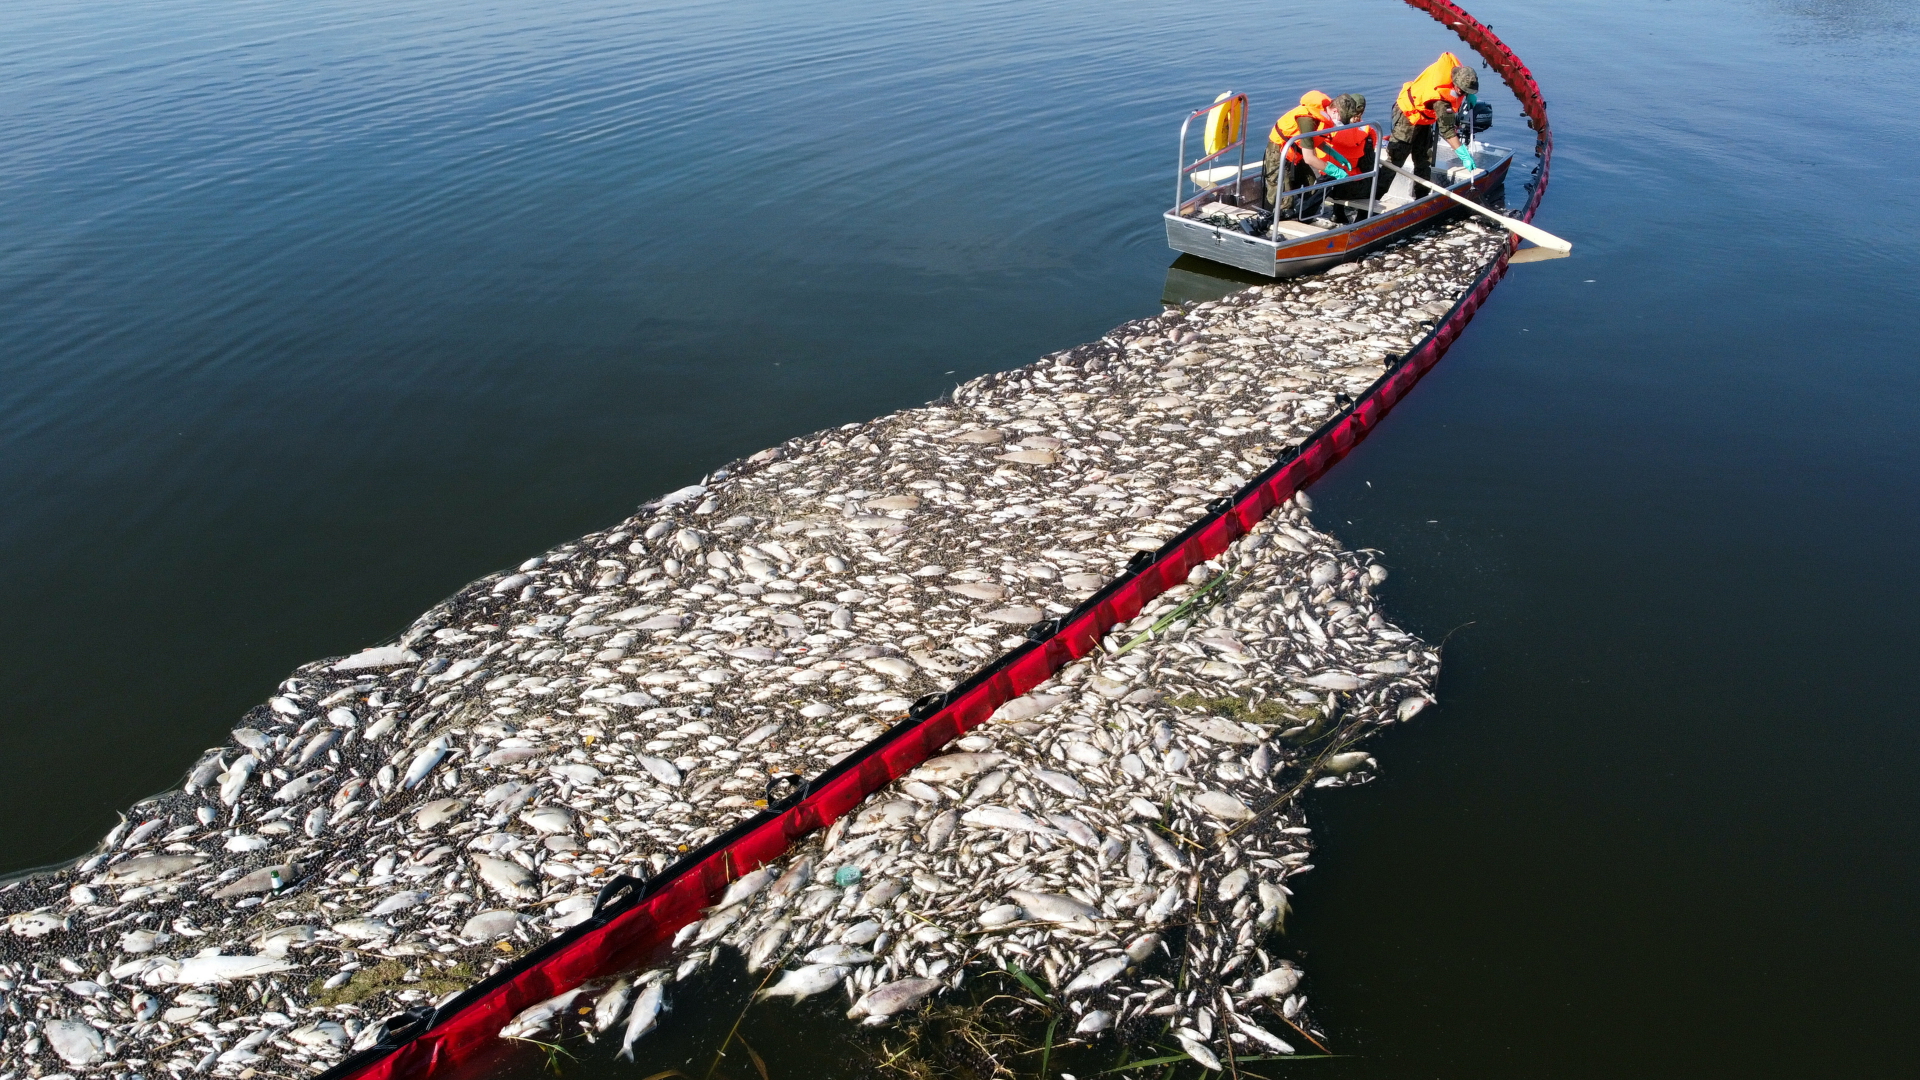  Arbeiter beteiligen sich an einer Aktion zur Reinigung der Oder von toten Fischen mit Hilfe eines flexiblen Damms | dpa